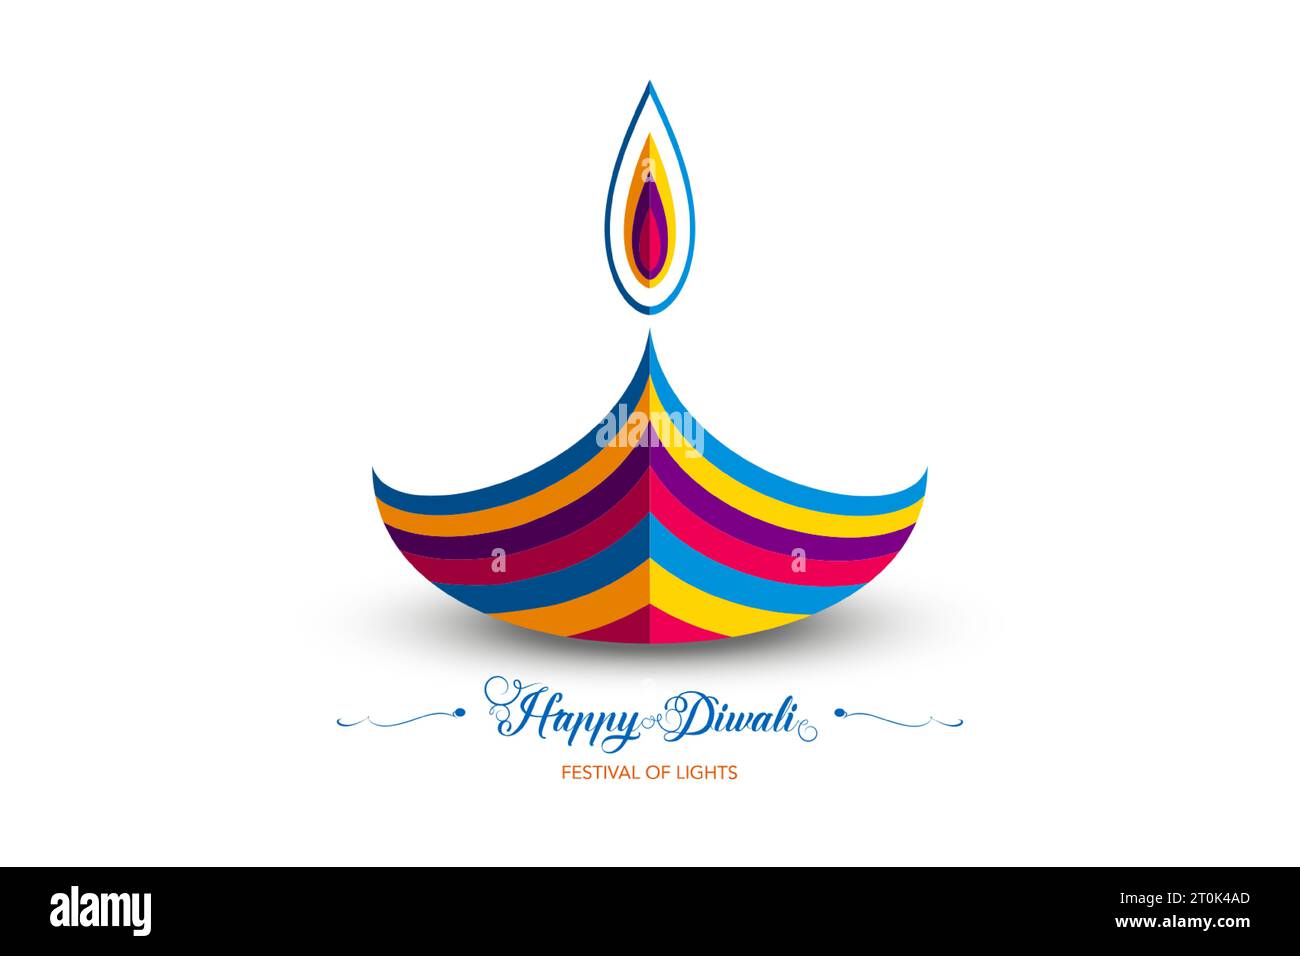 Happy Diwali Festival of Lights India Celebration Bunte Logo-Vorlage. Grafisches Bannerdesign der indischen Diya Oil Lamp, Papier geschnitten Design Stock Vektor